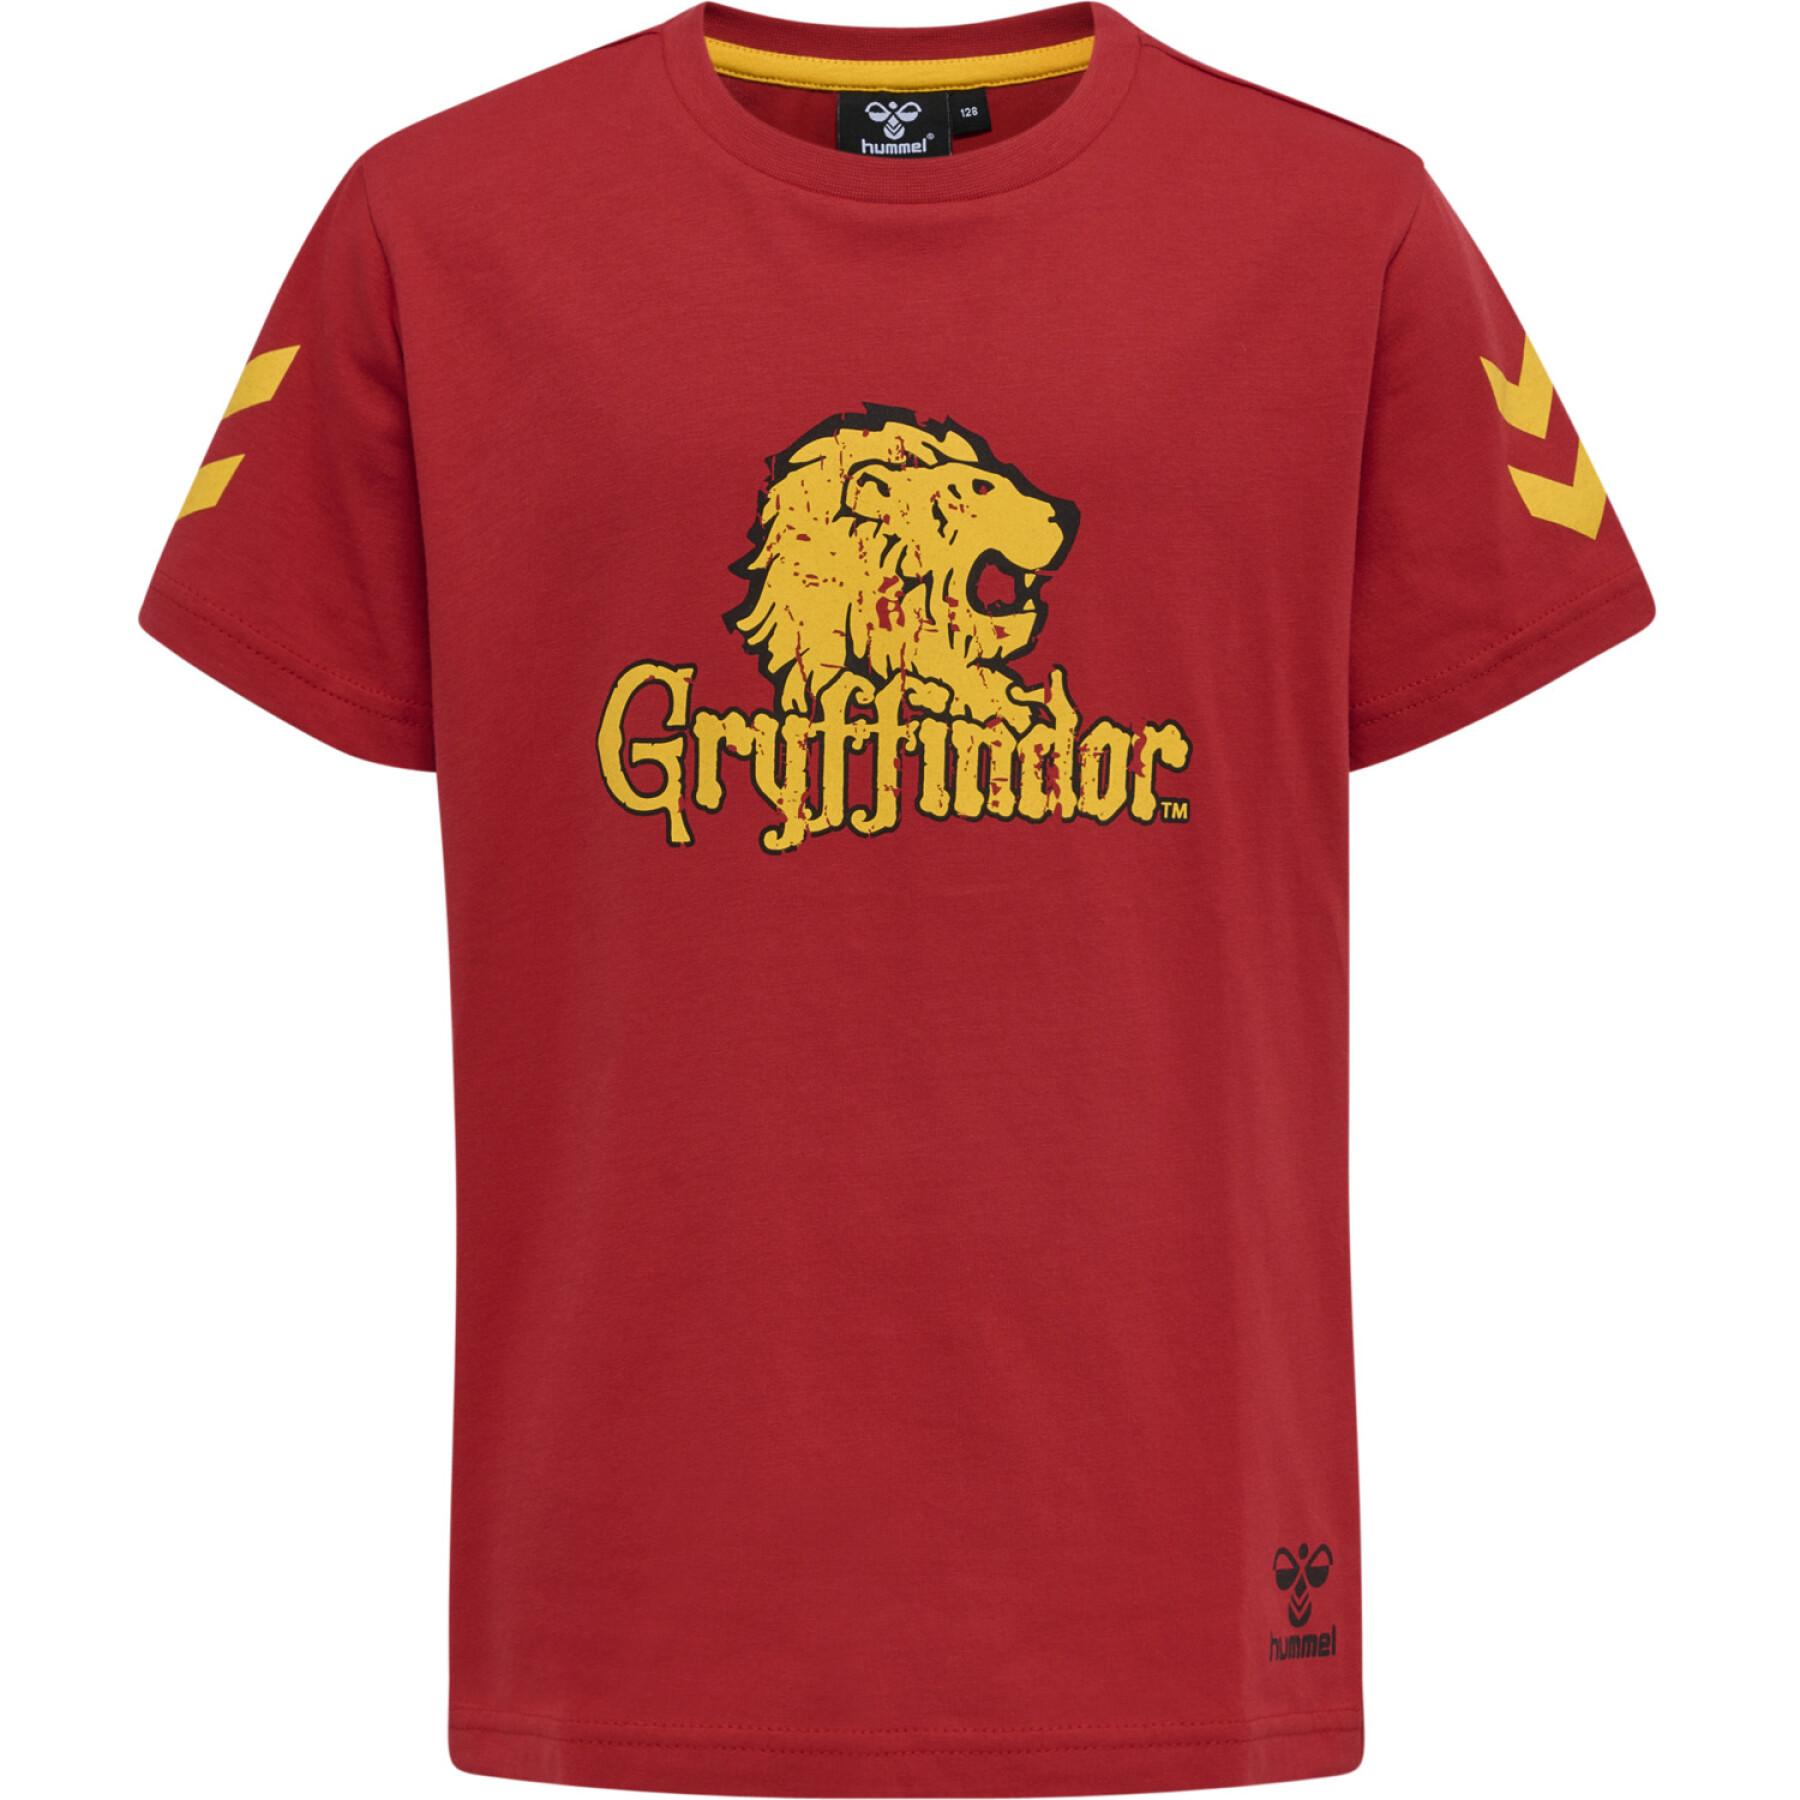 Kinder-T-shirt Hummel Harry Potter Tres